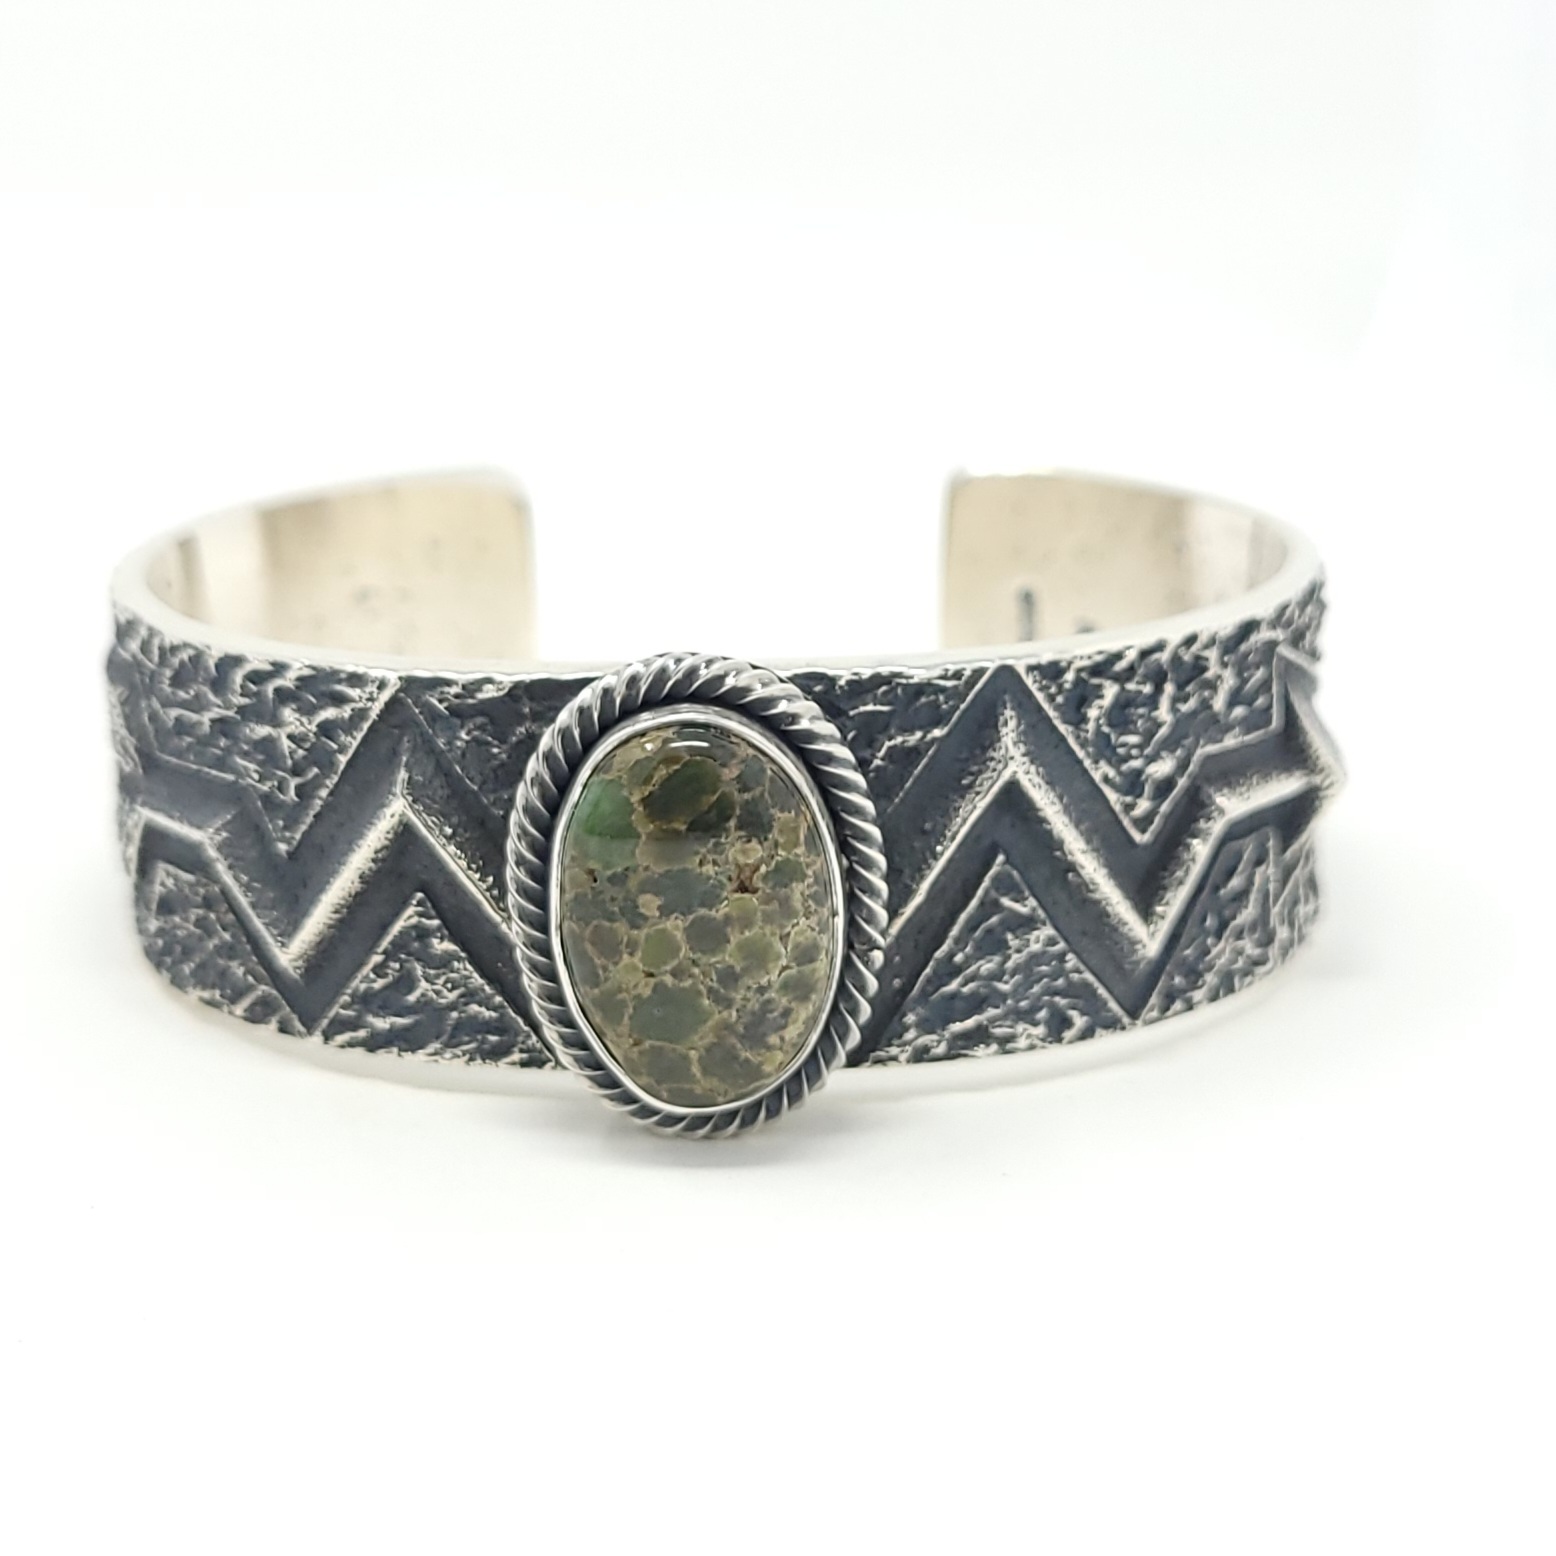 Diamond Pavé and Bezel Personalized Initial Bracelet – Ashley Schenkein  Jewelry Design